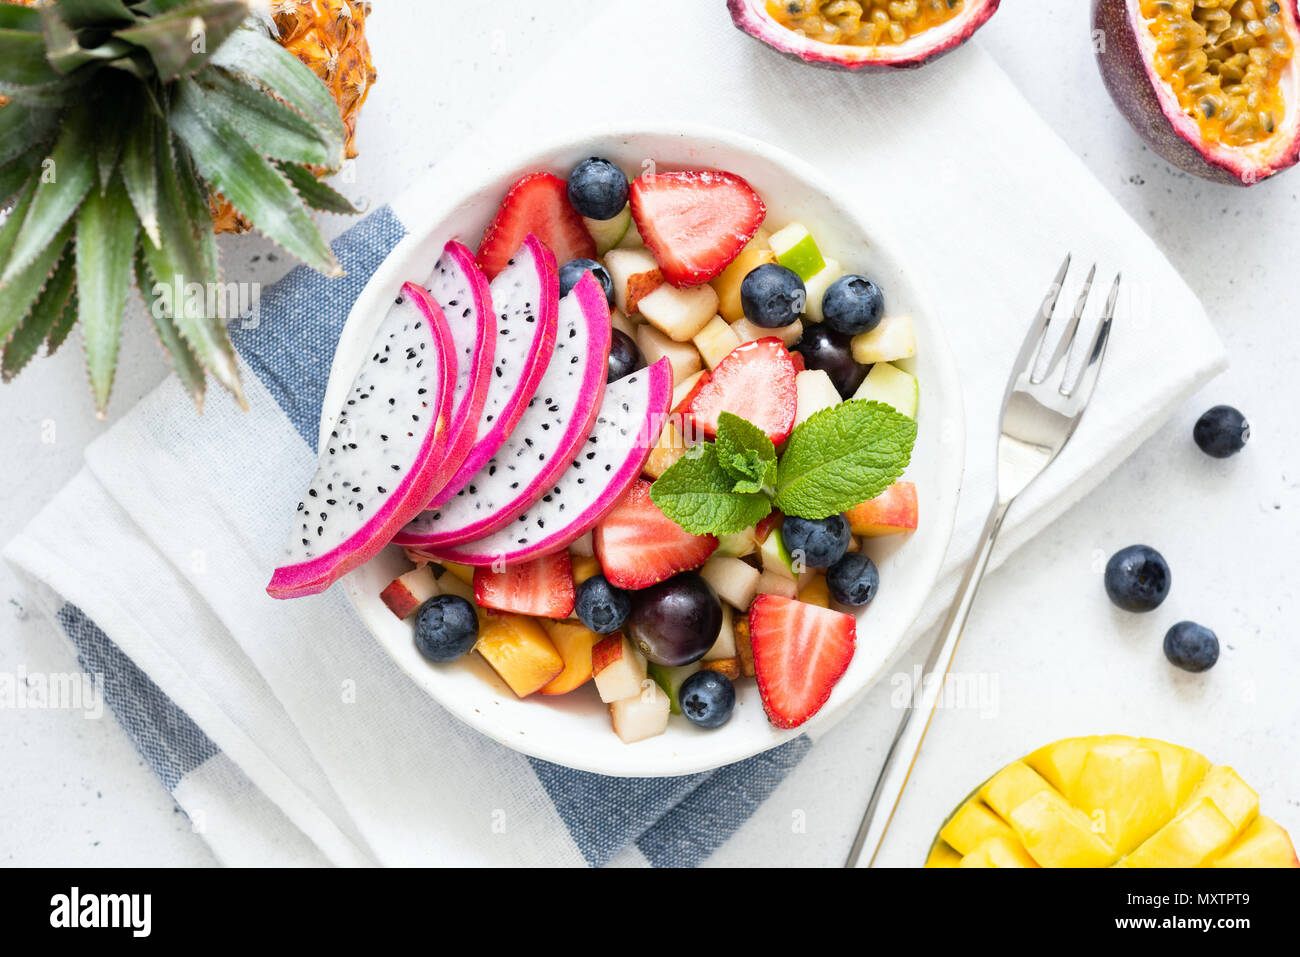 Salade de fruits tropicaux avec fruit du dragon et la mangue dans un bol. Salade de fruits exotiques aux couleurs vives sur fond blanc, dessus de table view Banque D'Images